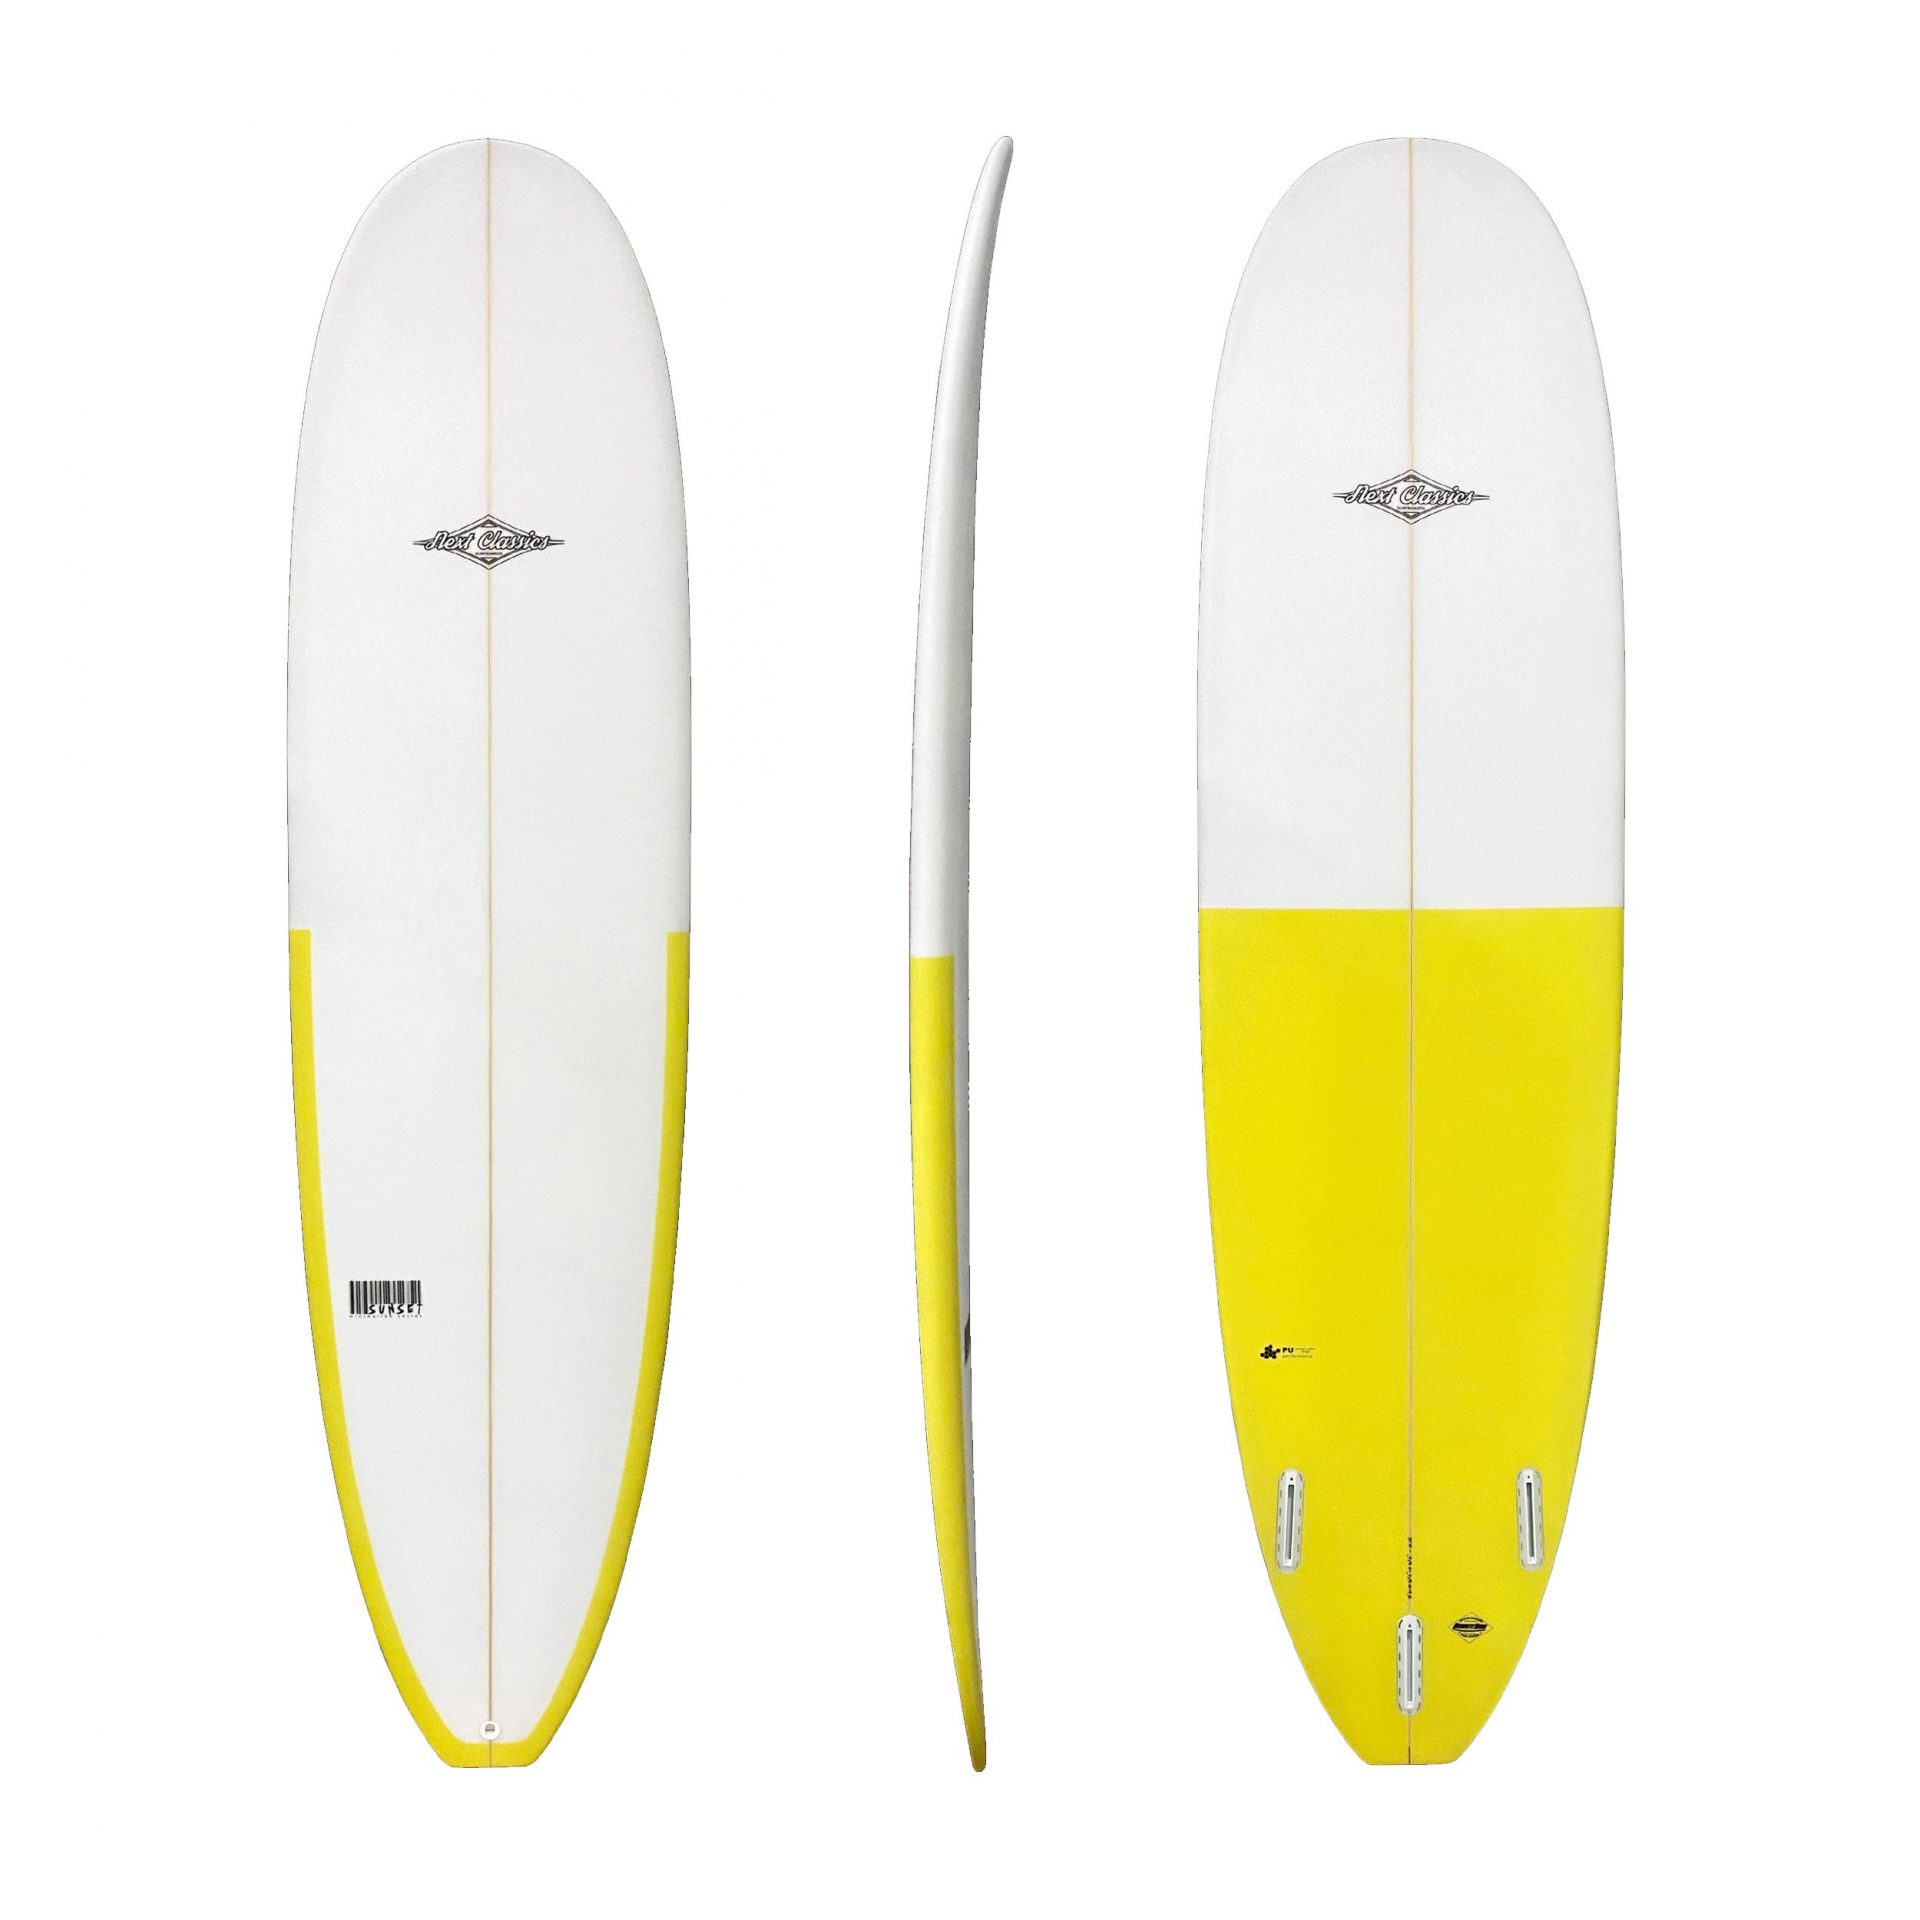 Comprar tabla de surf Next surfboards Sunset-A